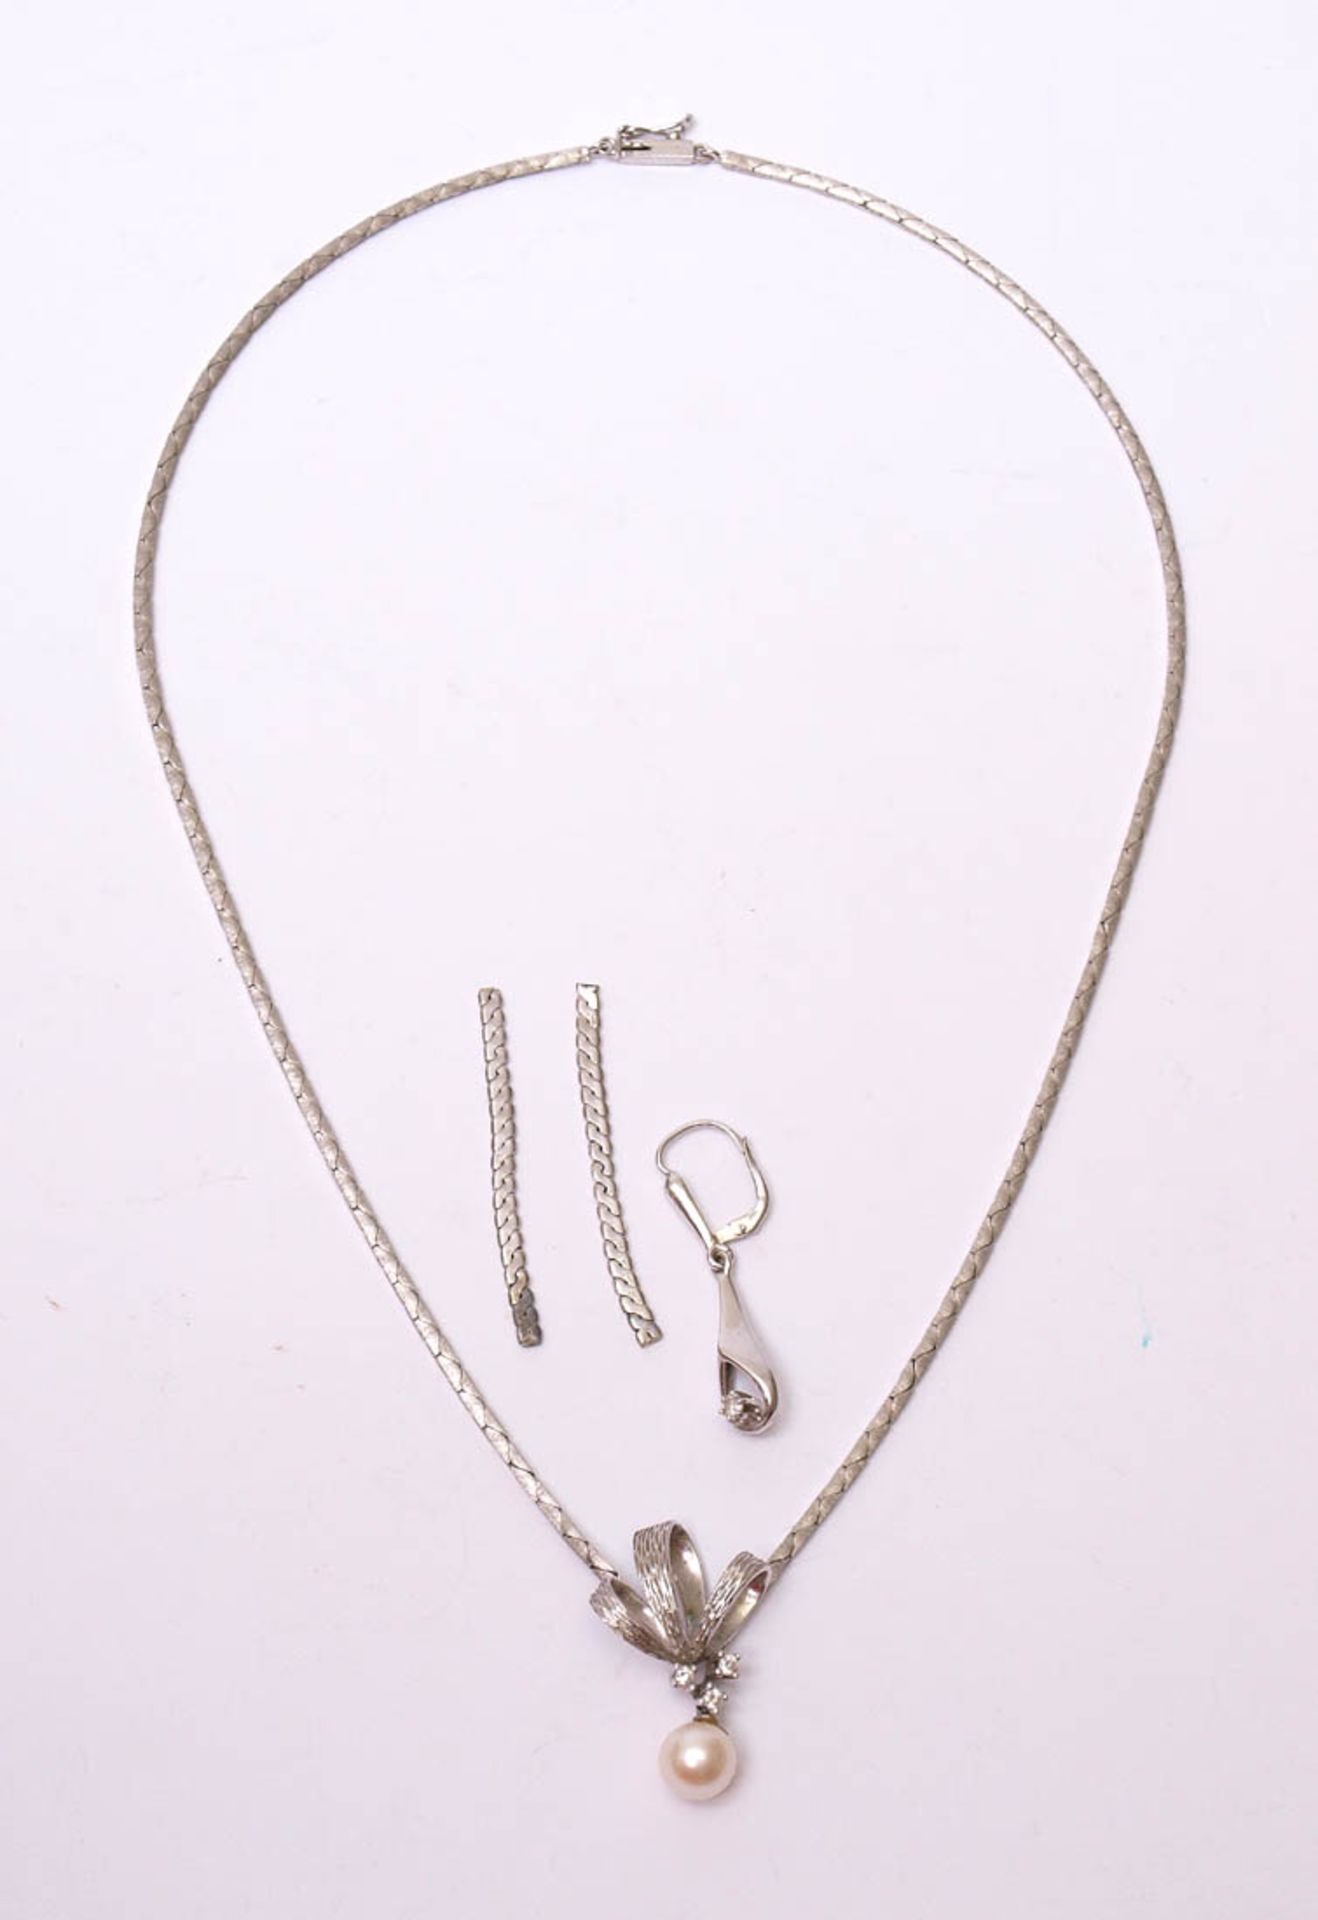 KollierWG 14kt. Mittelstück mit Schleife, Perlenpendeloque und drei kleinen Brillanten. L.41cm. Dazu